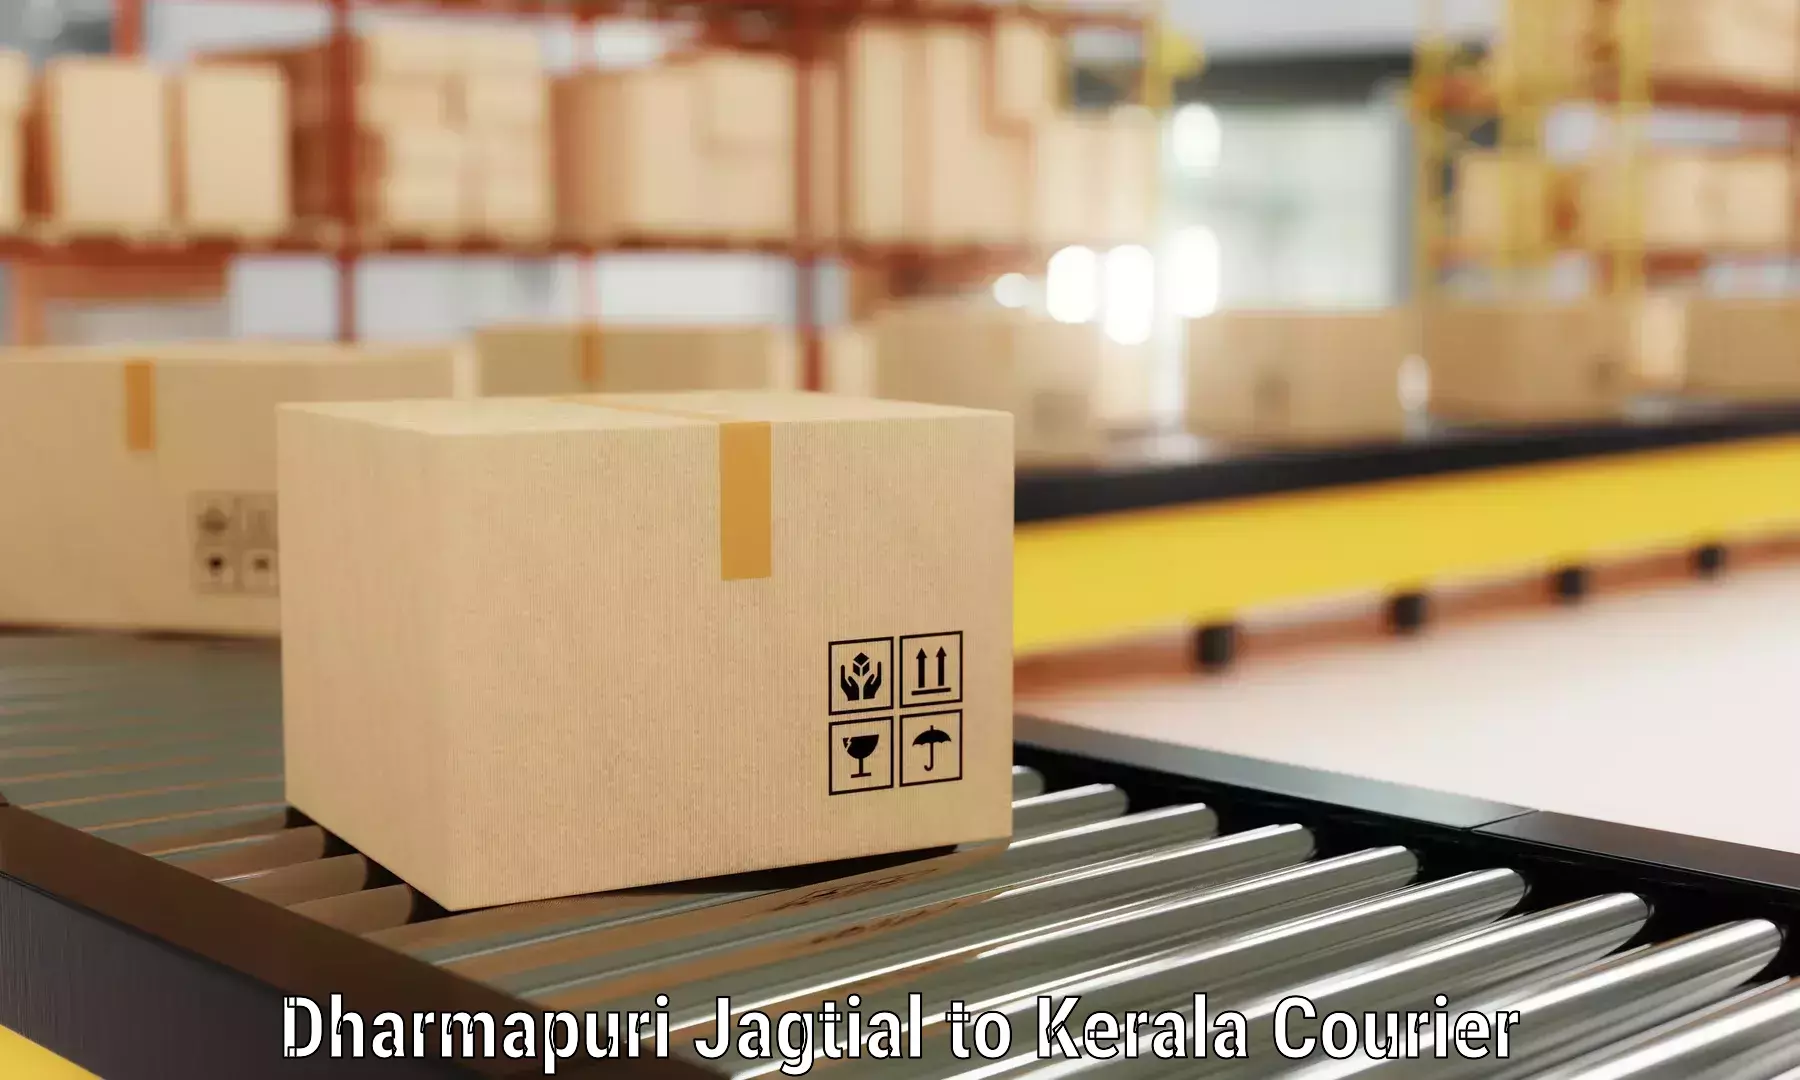 Efficient packing and moving Dharmapuri Jagtial to Pallikkara